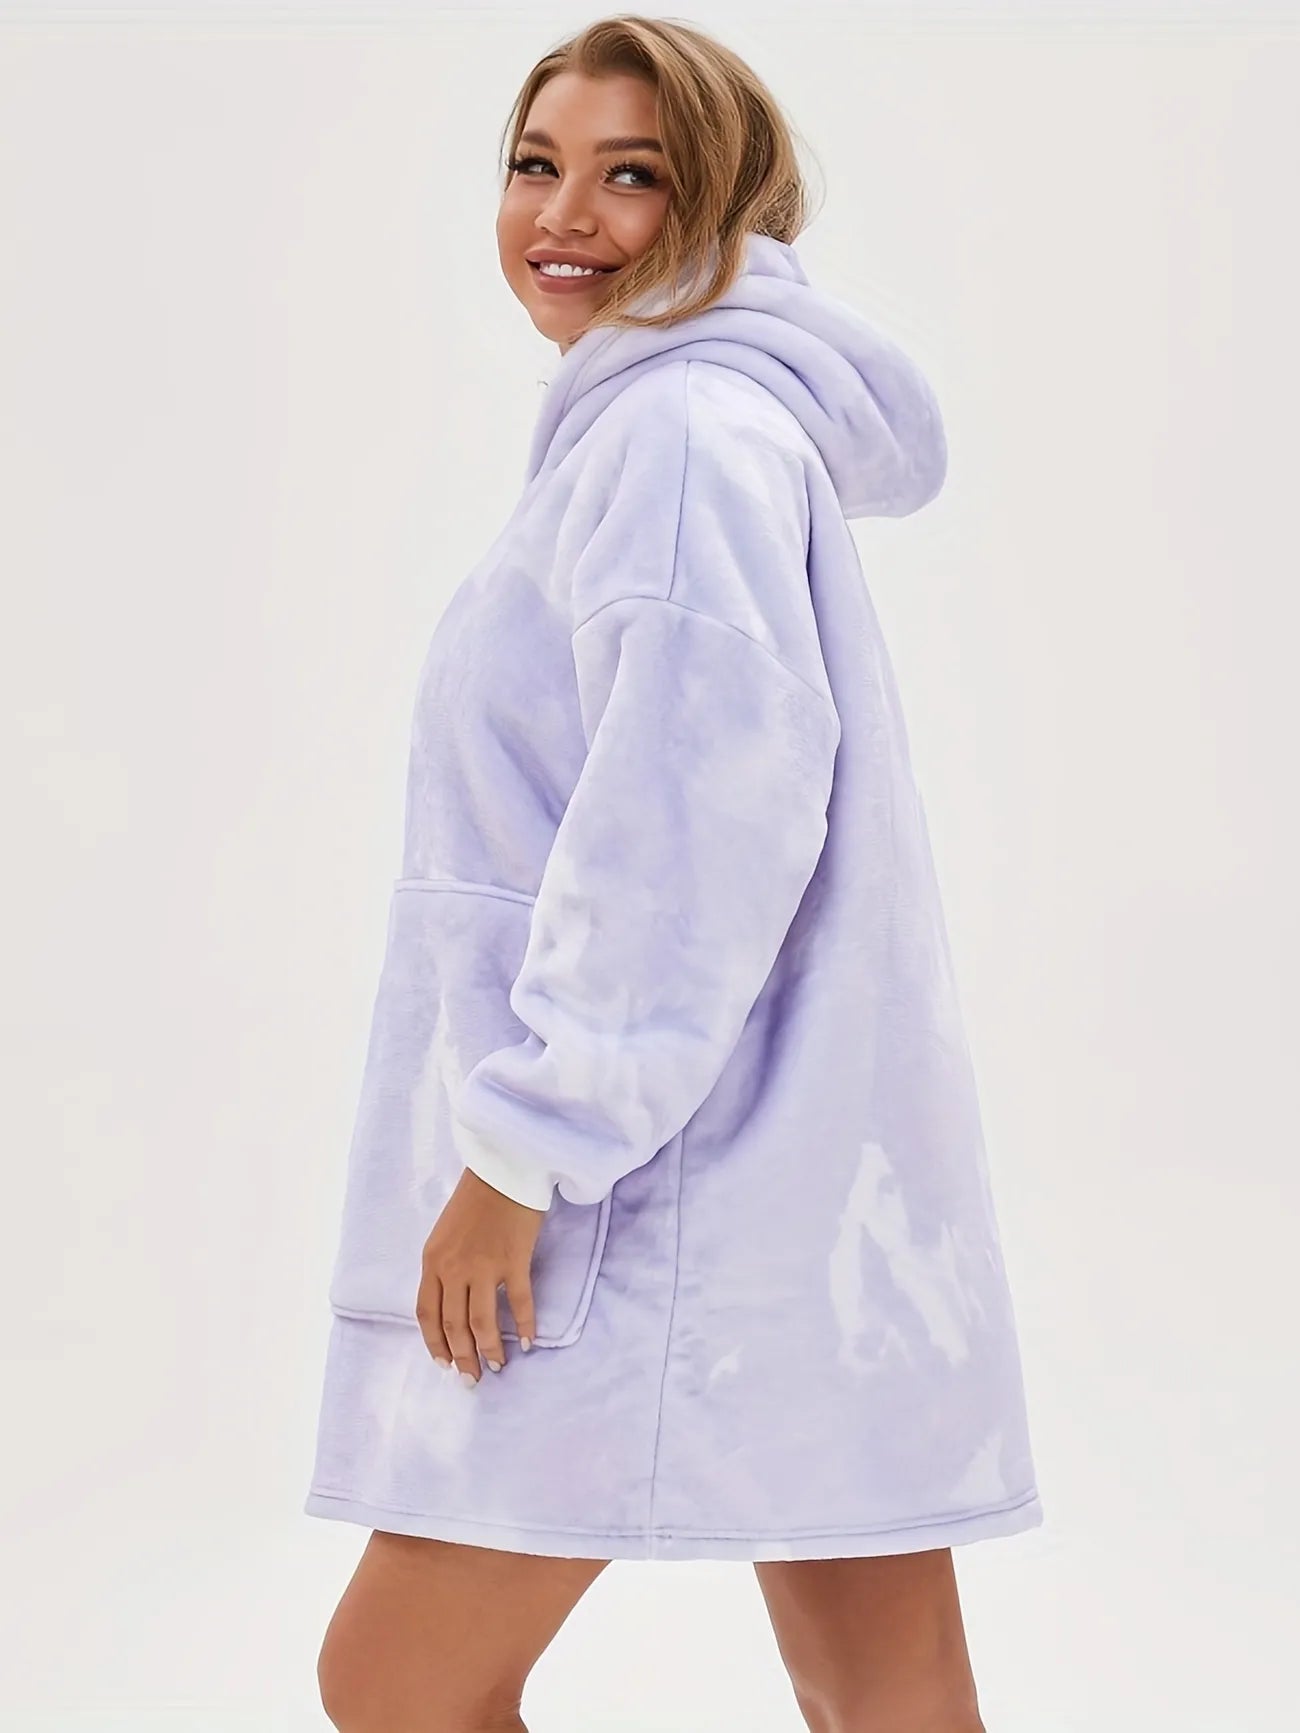 Plush lounge robe pocket blanket hoodie